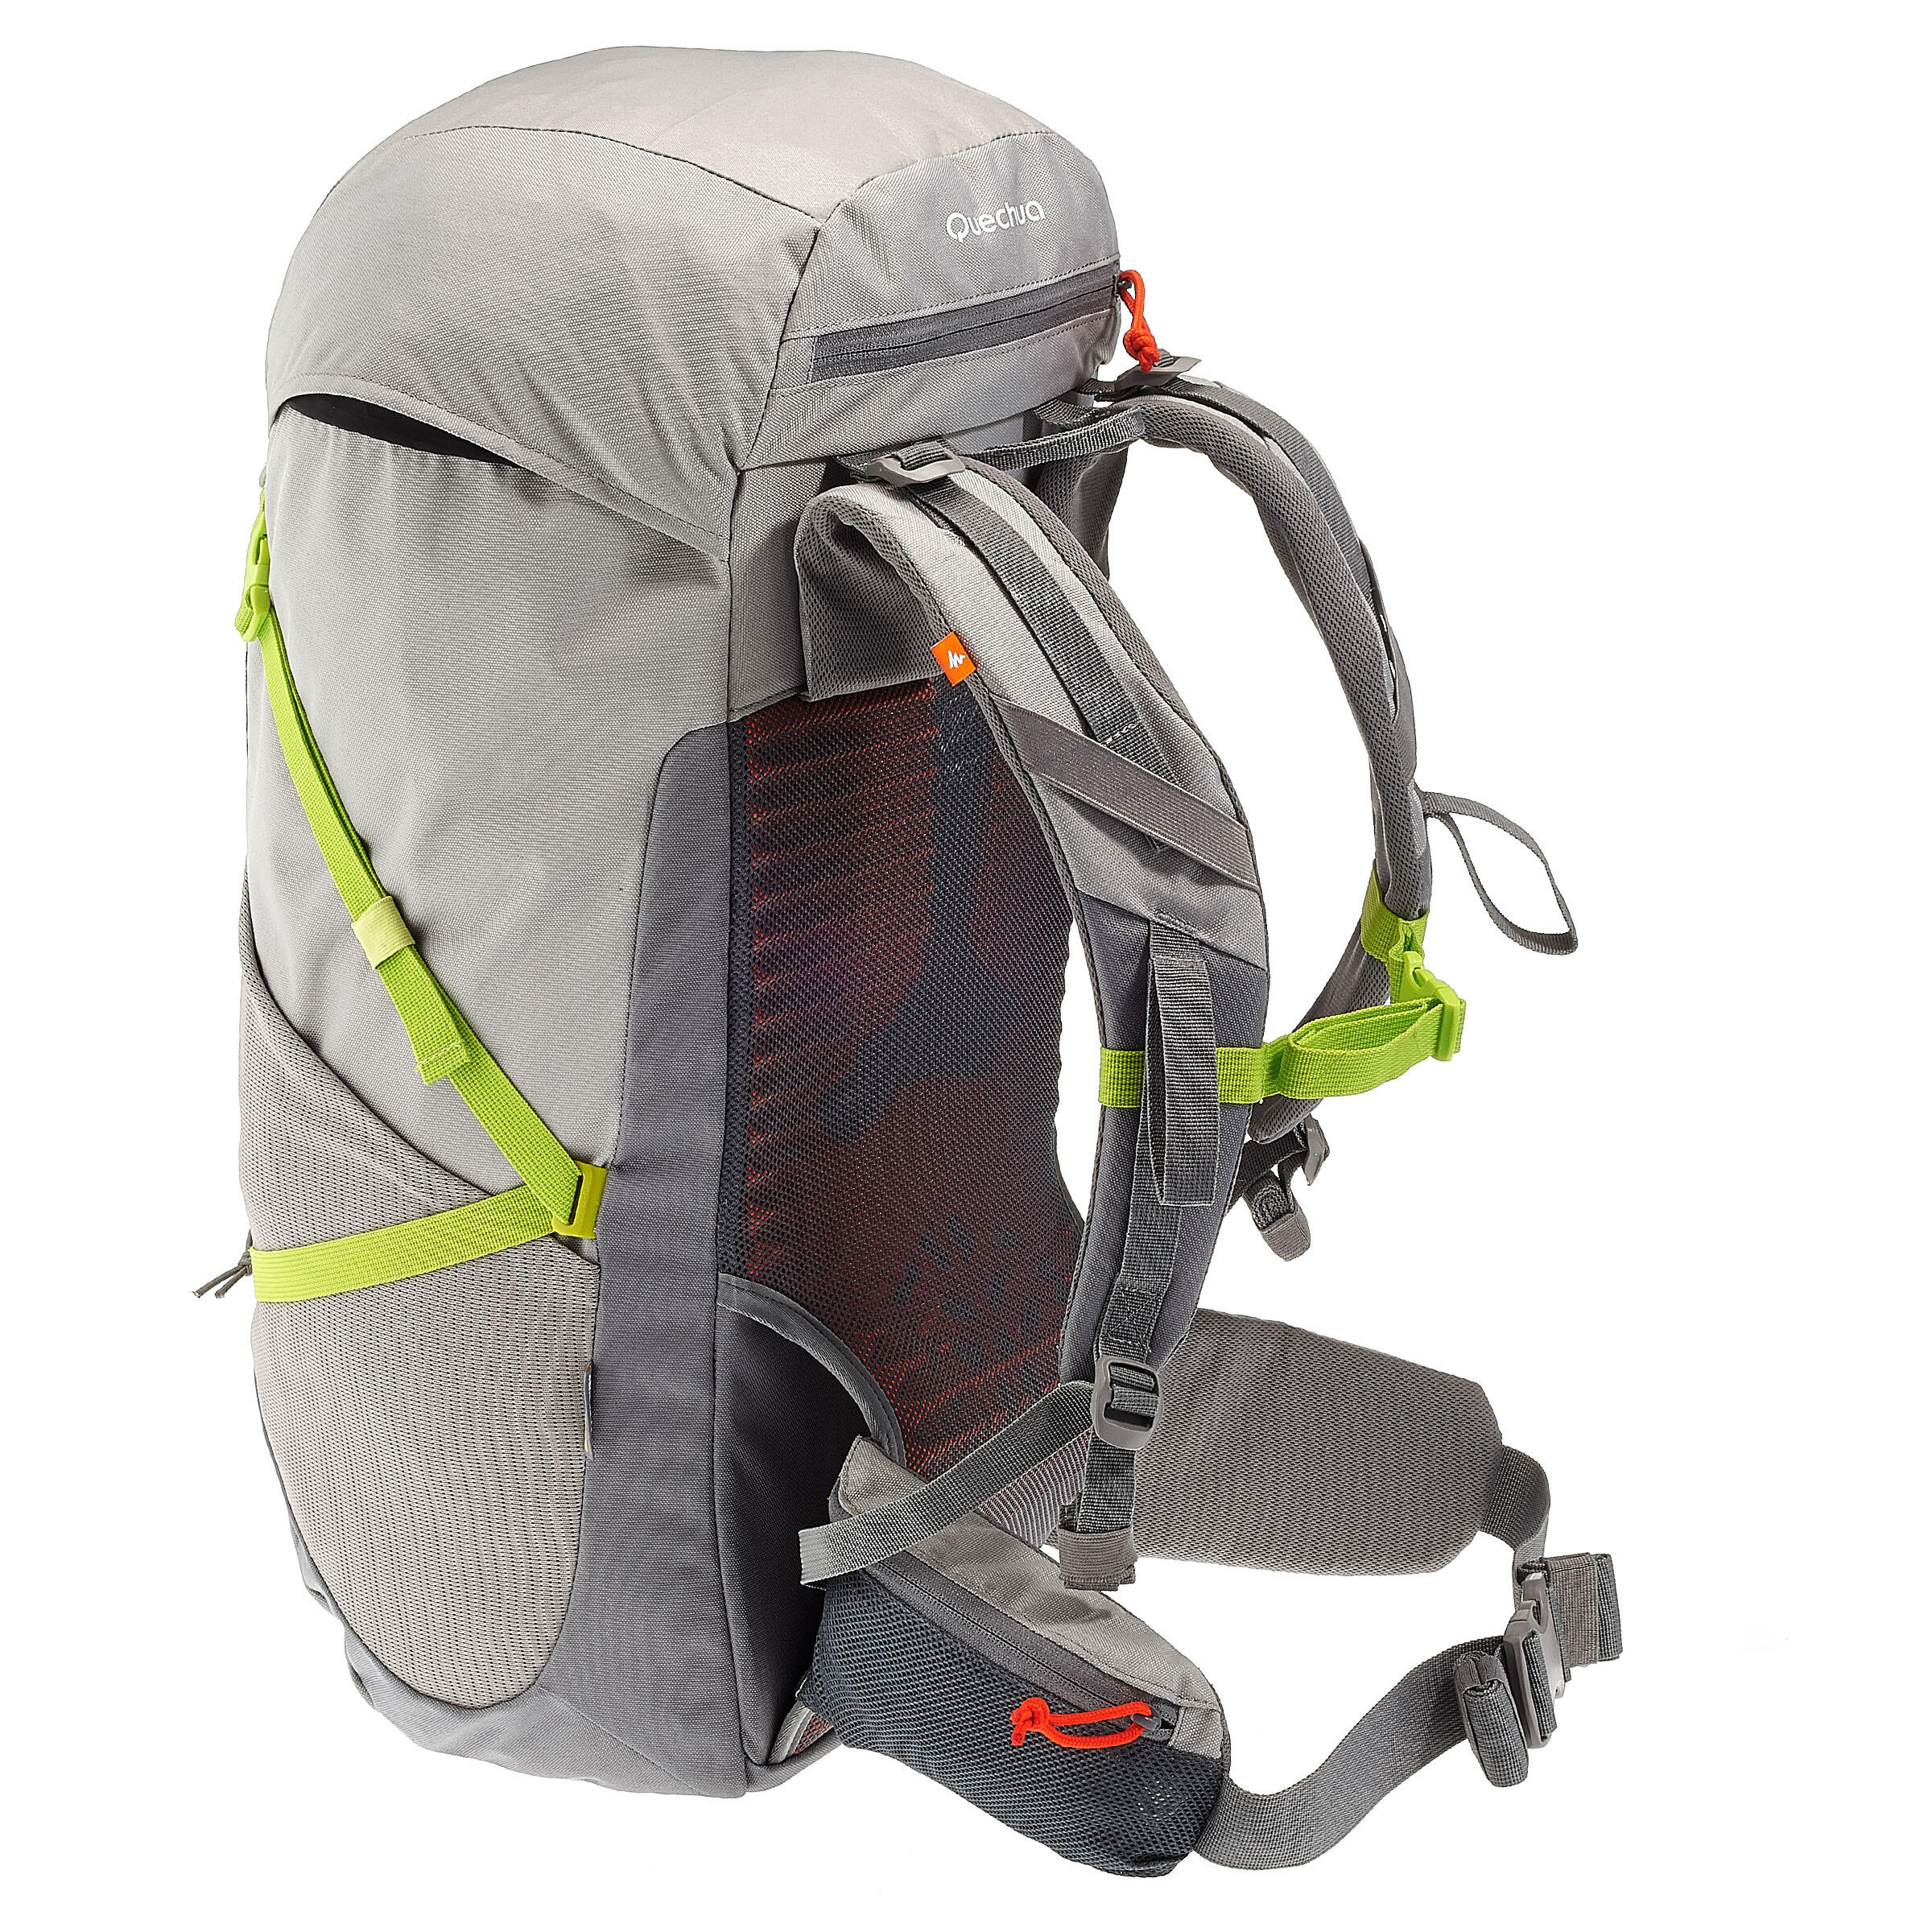 FORCLAZ 40 AIR backpack BLUE: AIR COOLING Label - regulates back perspiration 4/19